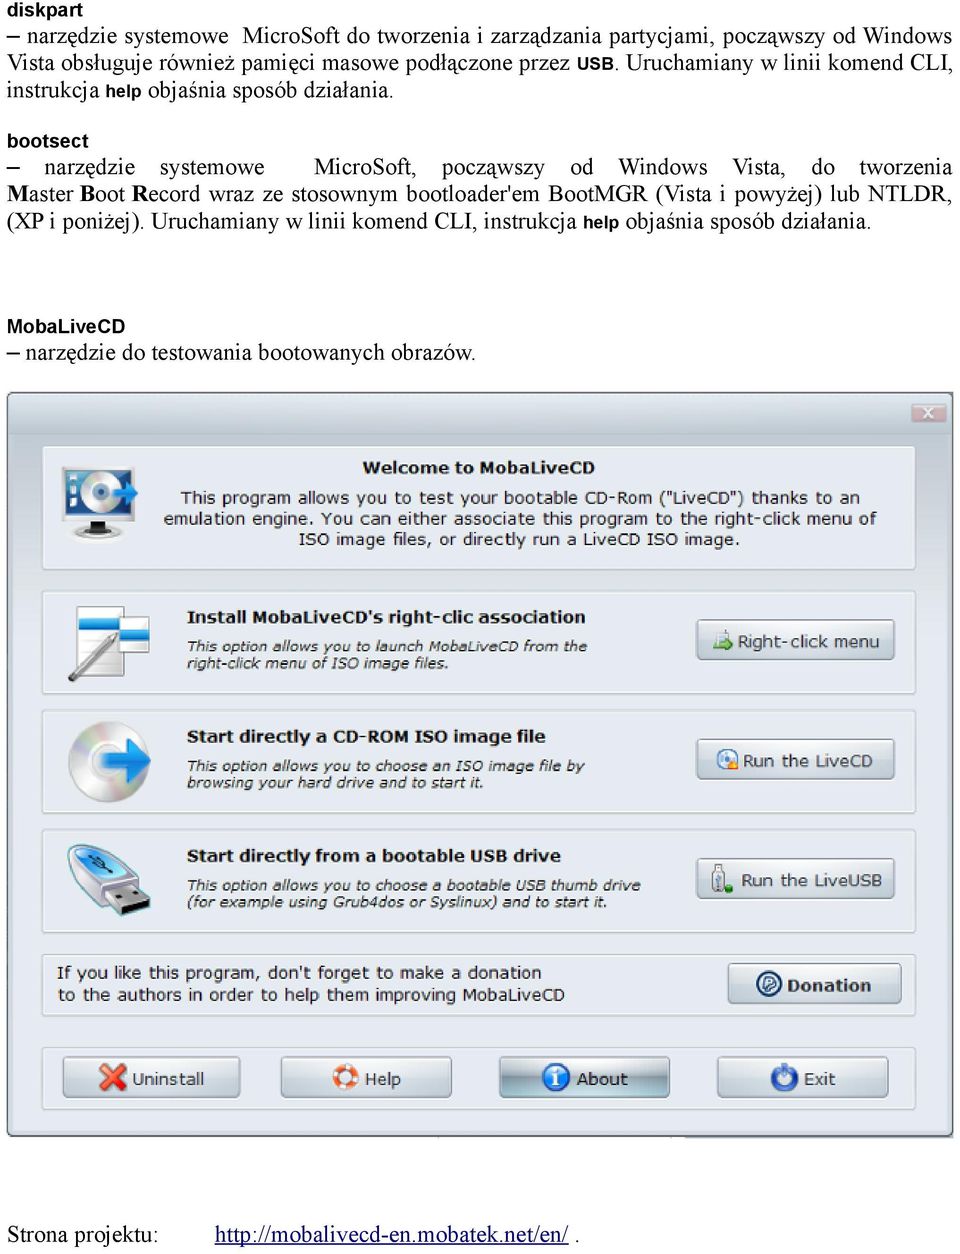 bootsect narzędzie systemowe MicroSoft, począwszy od Windows Vista, do tworzenia Master Boot Record wraz ze stosownym bootloader'em BootMGR (Vista i